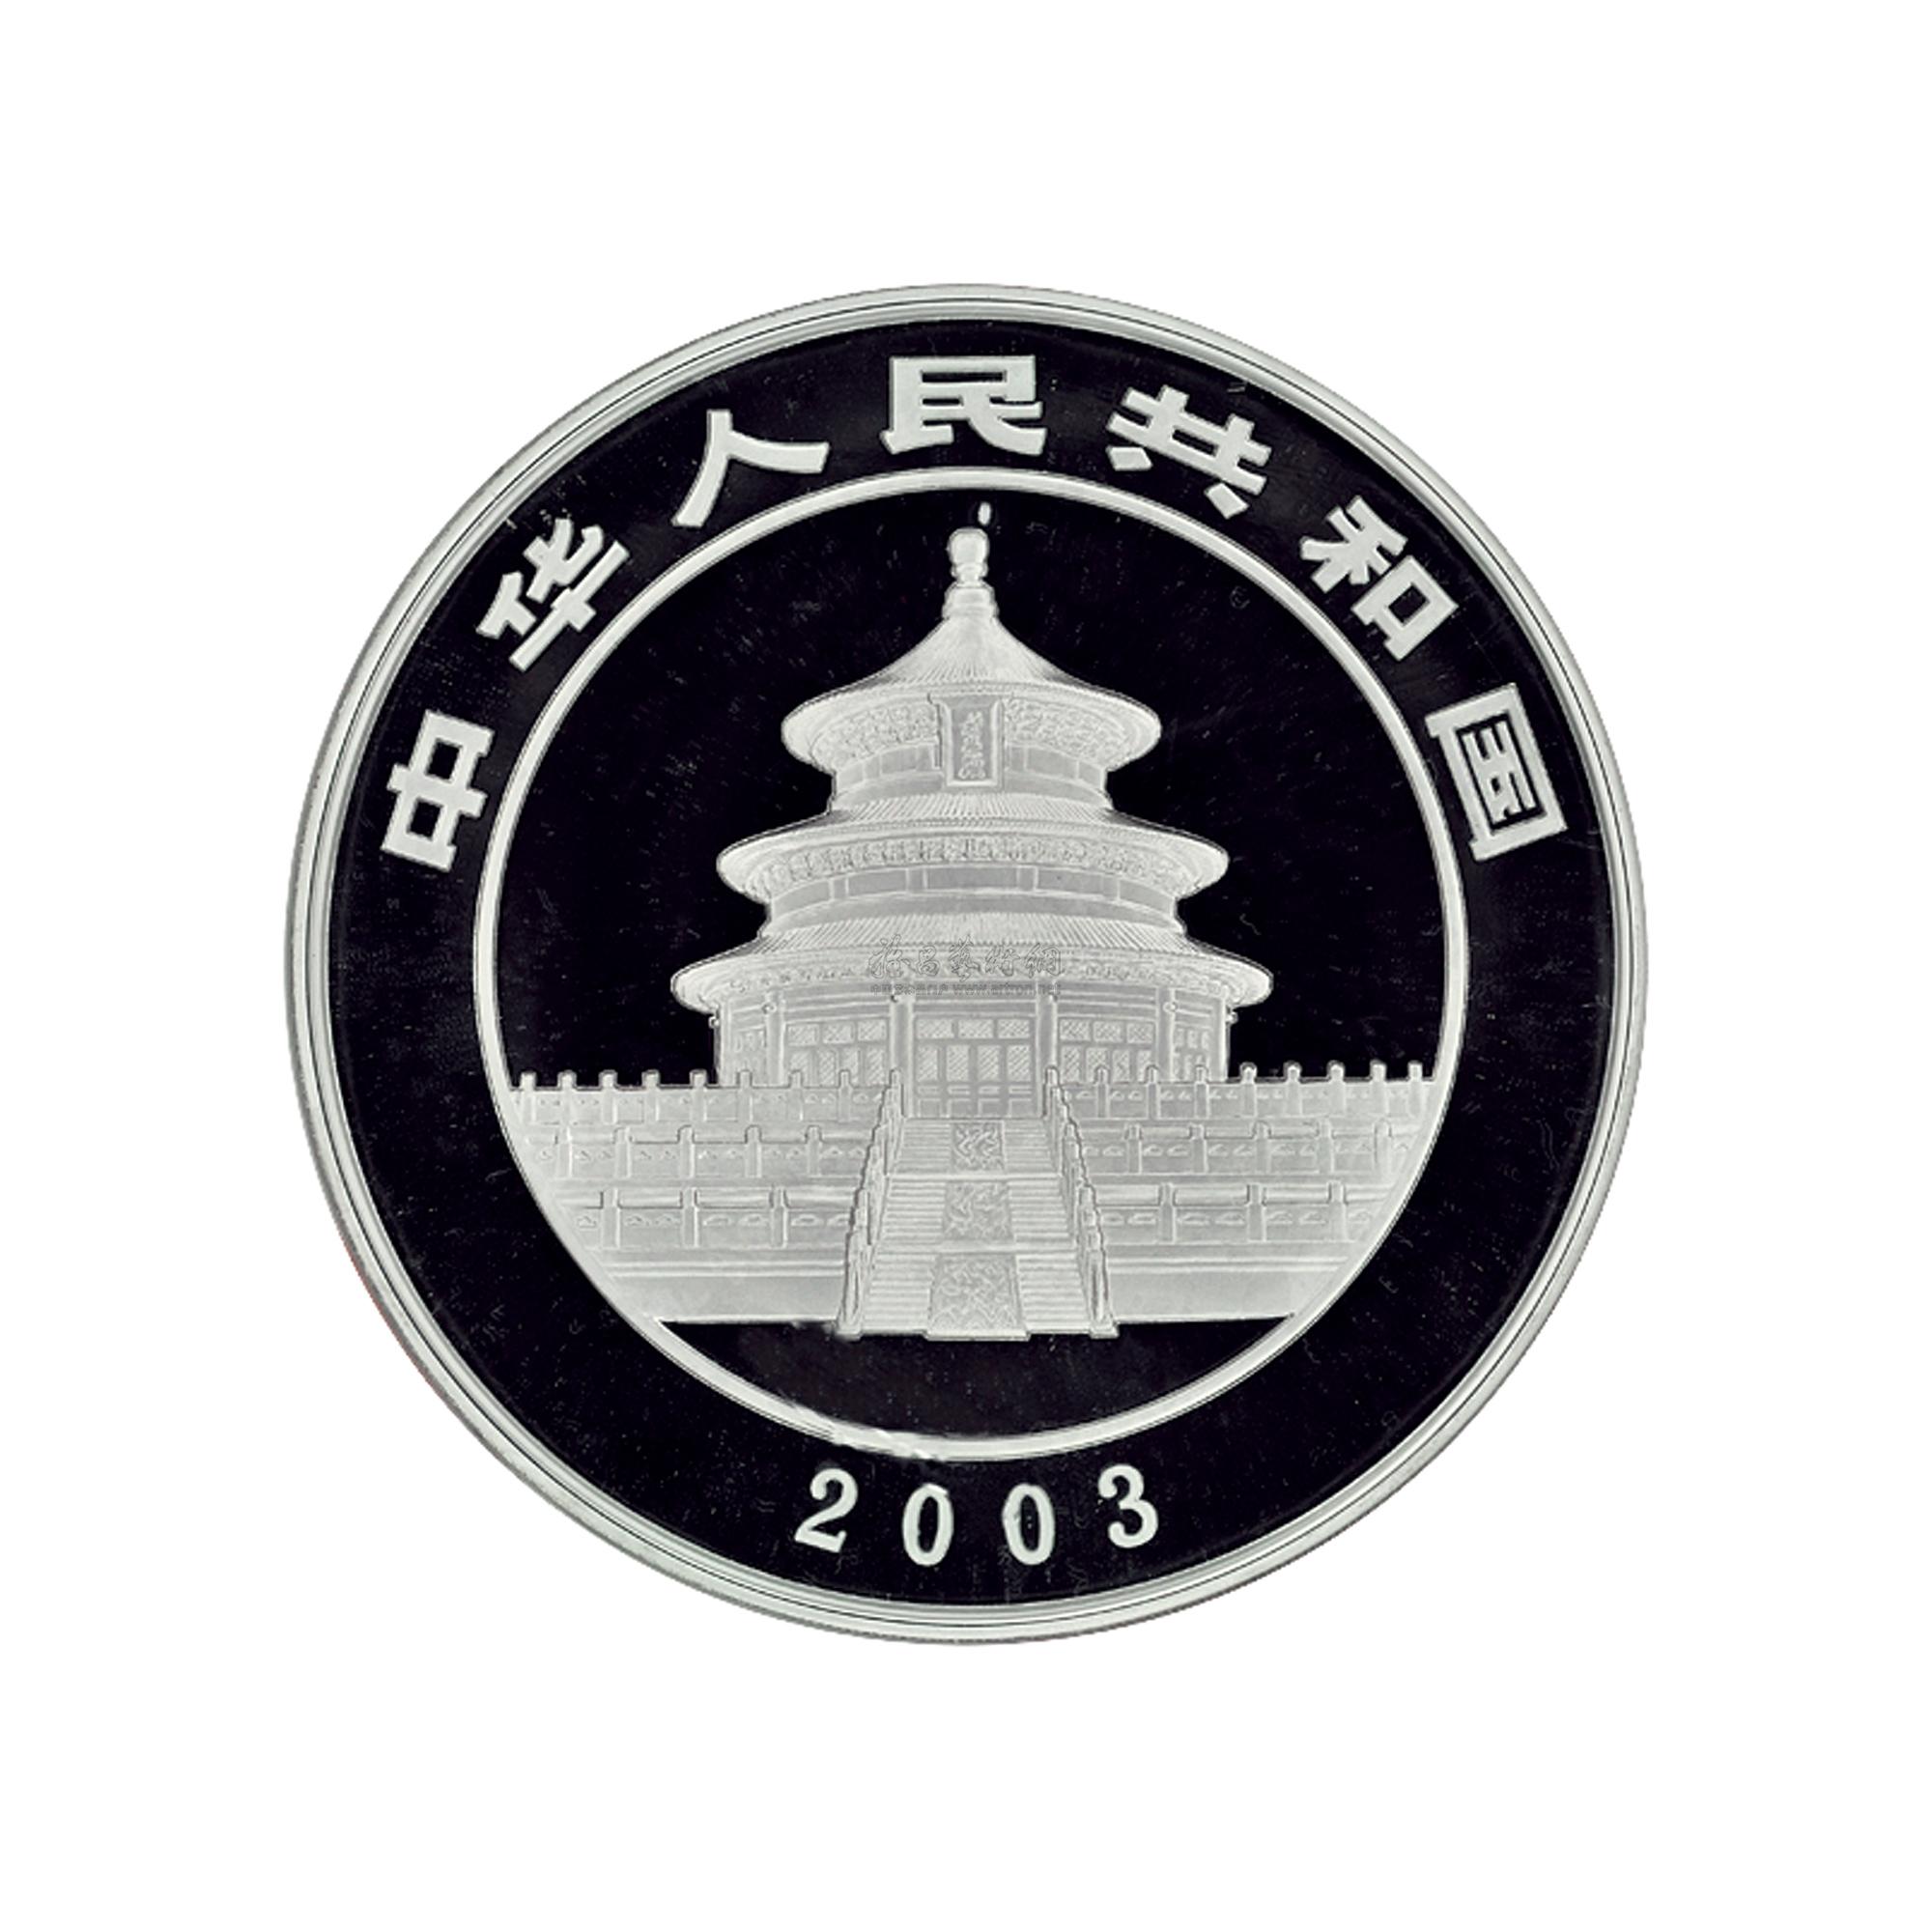 中国金币总公司logo图片